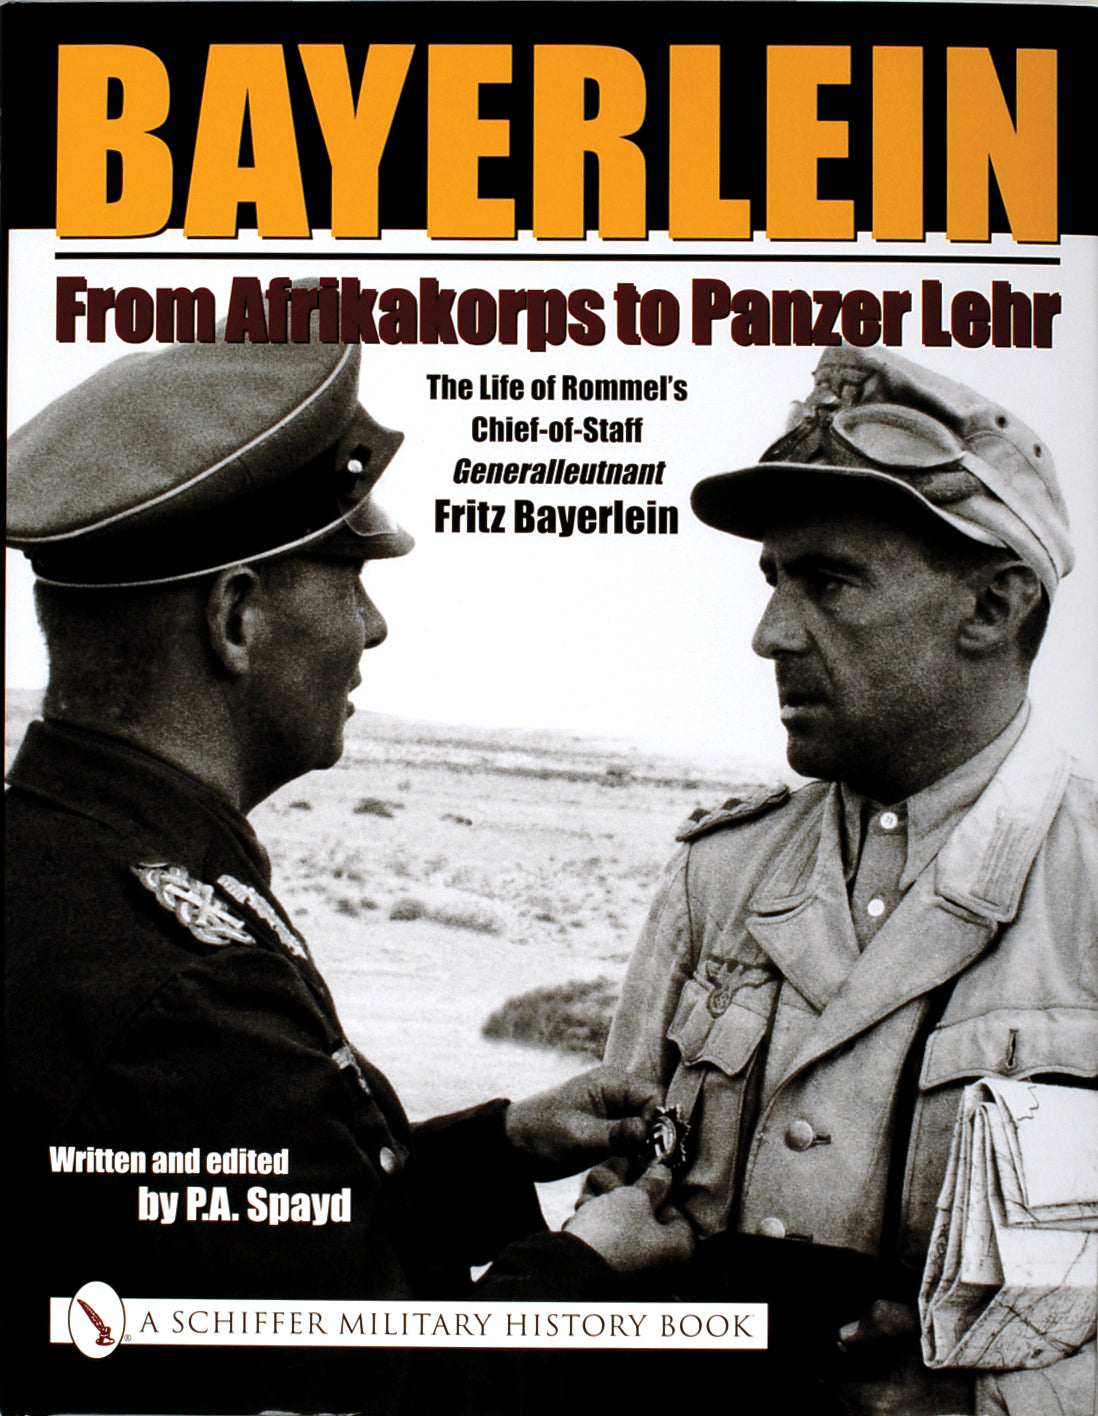 Bayerlein: From Afrikakorps to Panzer Lehr